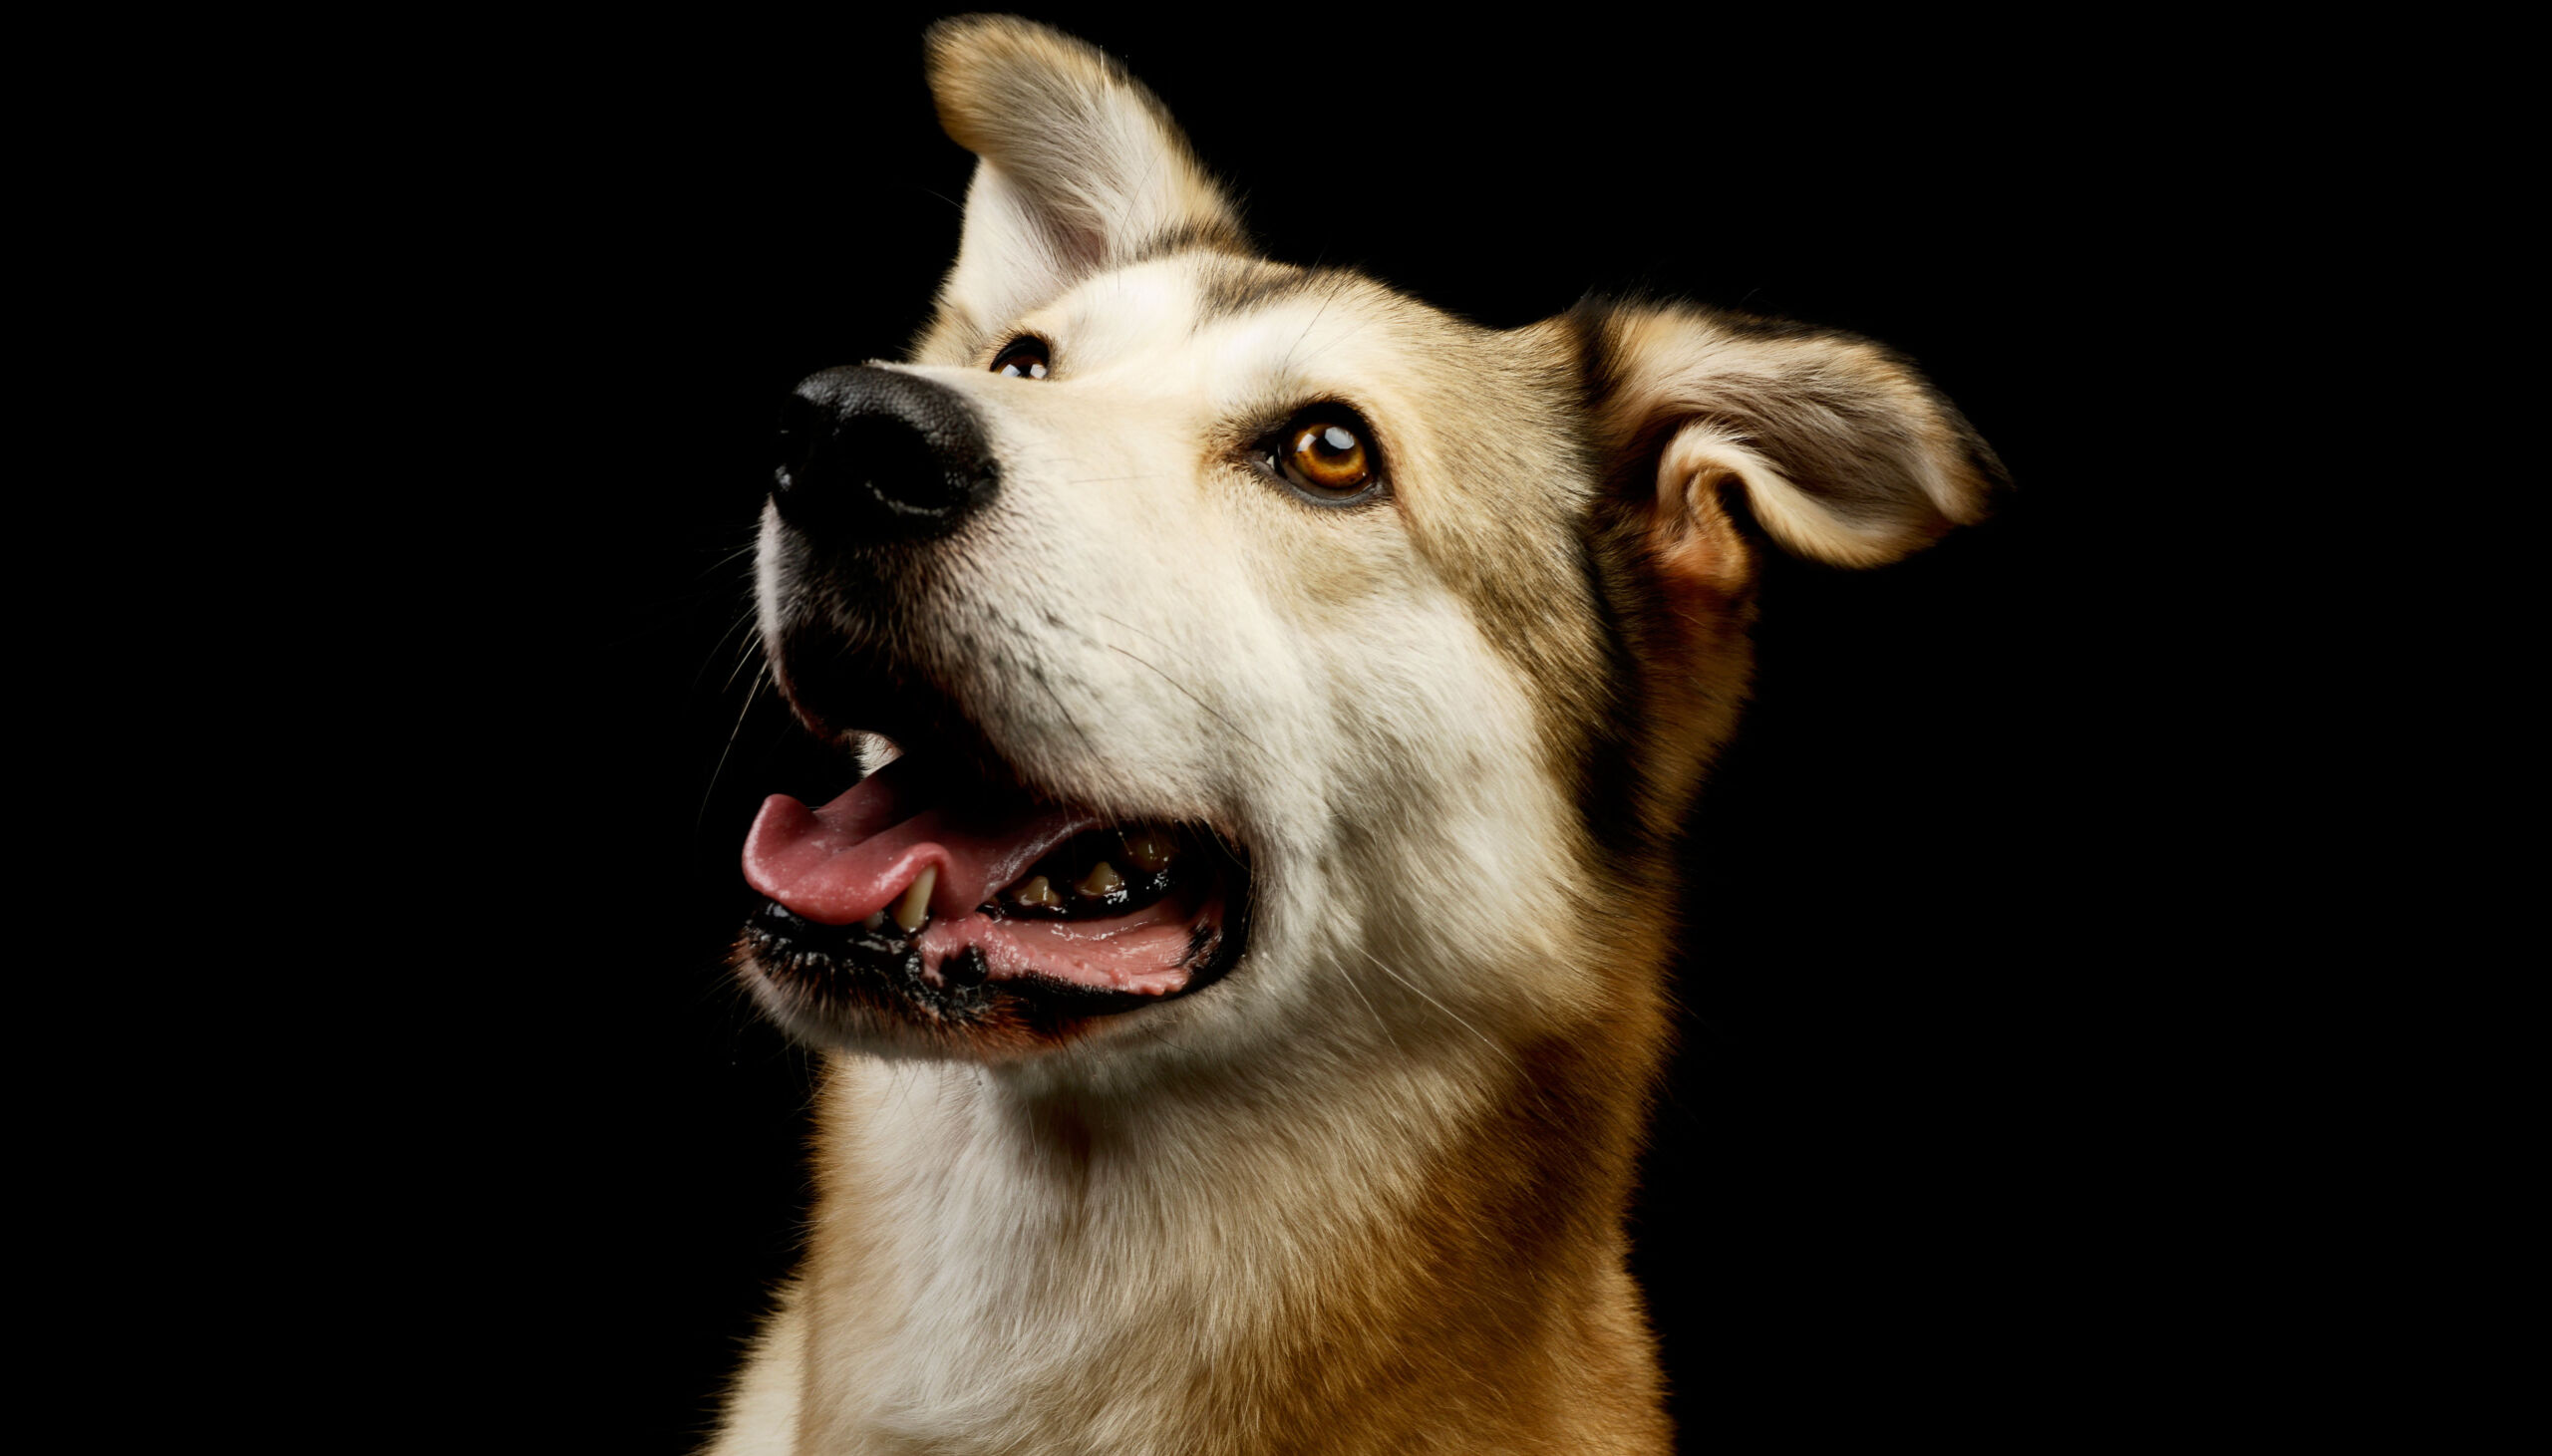 Dizionario umano-canino: cosa capiscono i cani delle comunicazioni umane